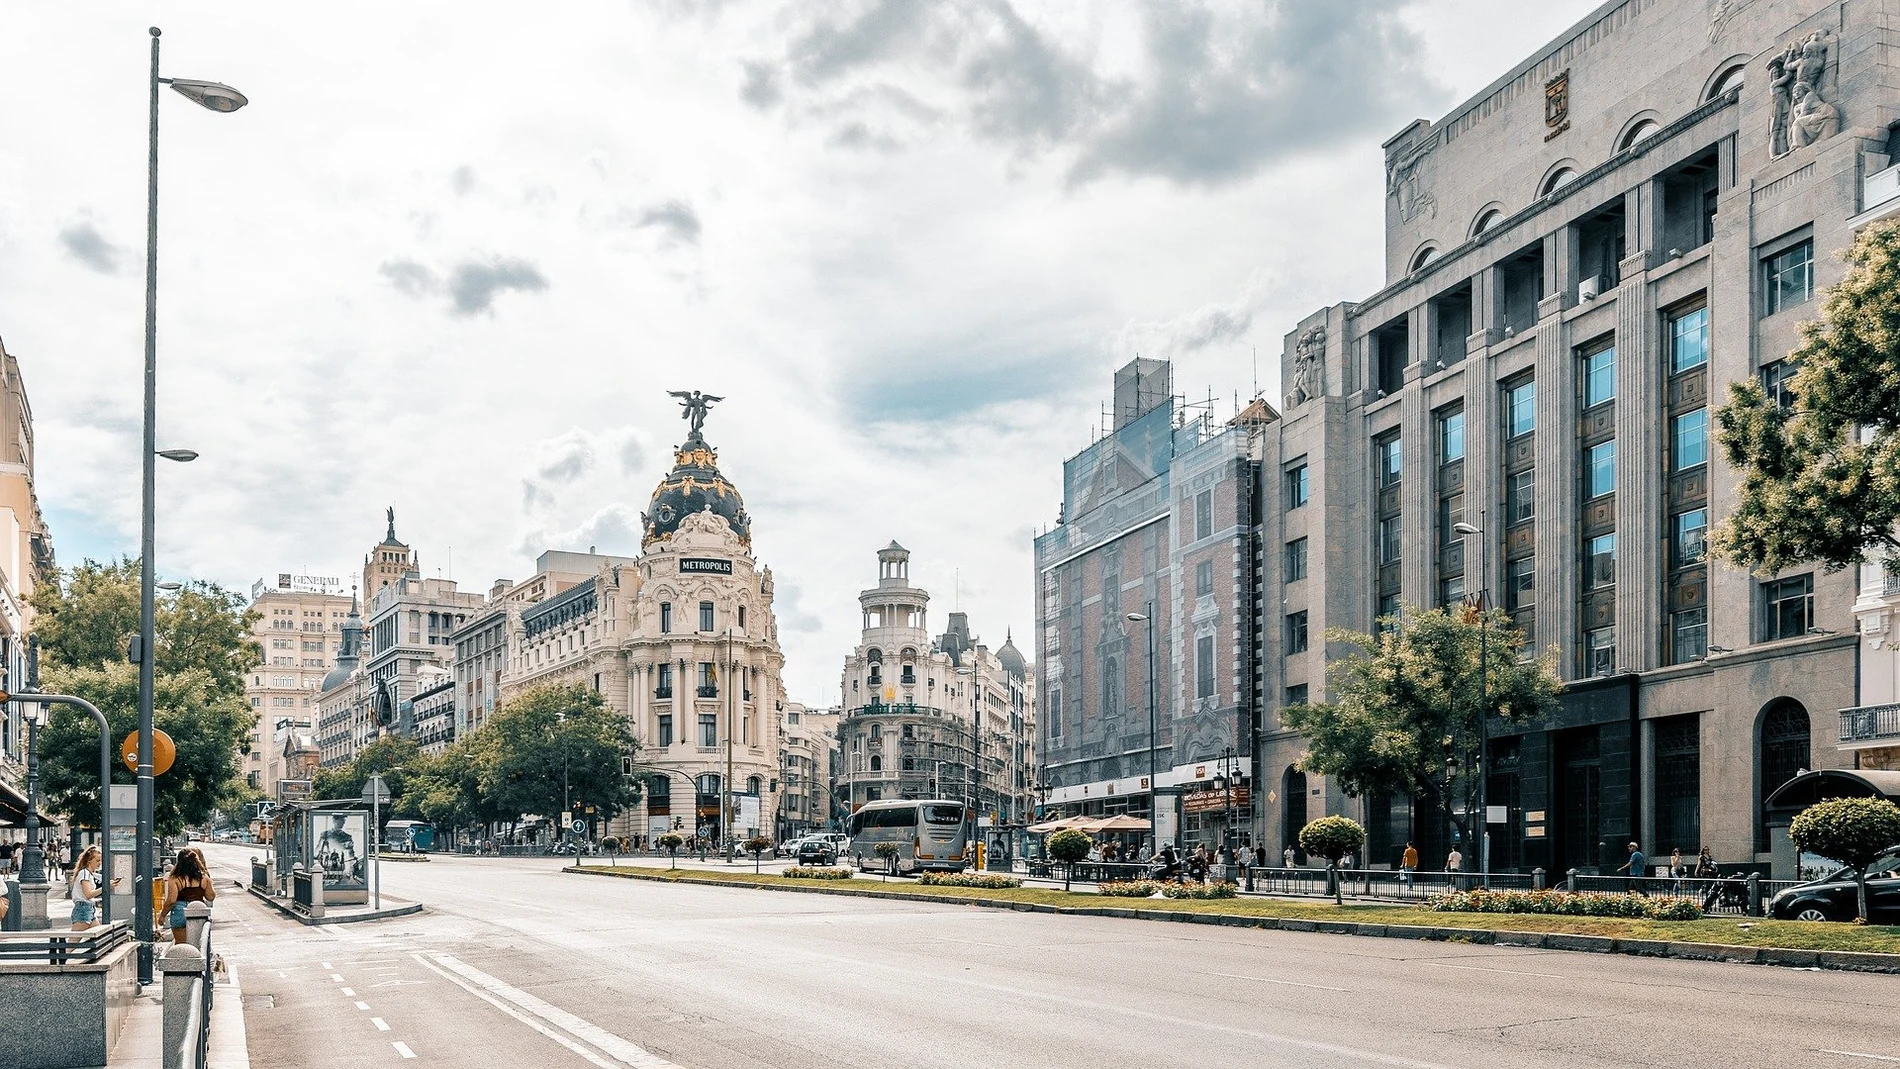 Madrid, mejor destino turístico que Barcelona según el Wall Street Journal